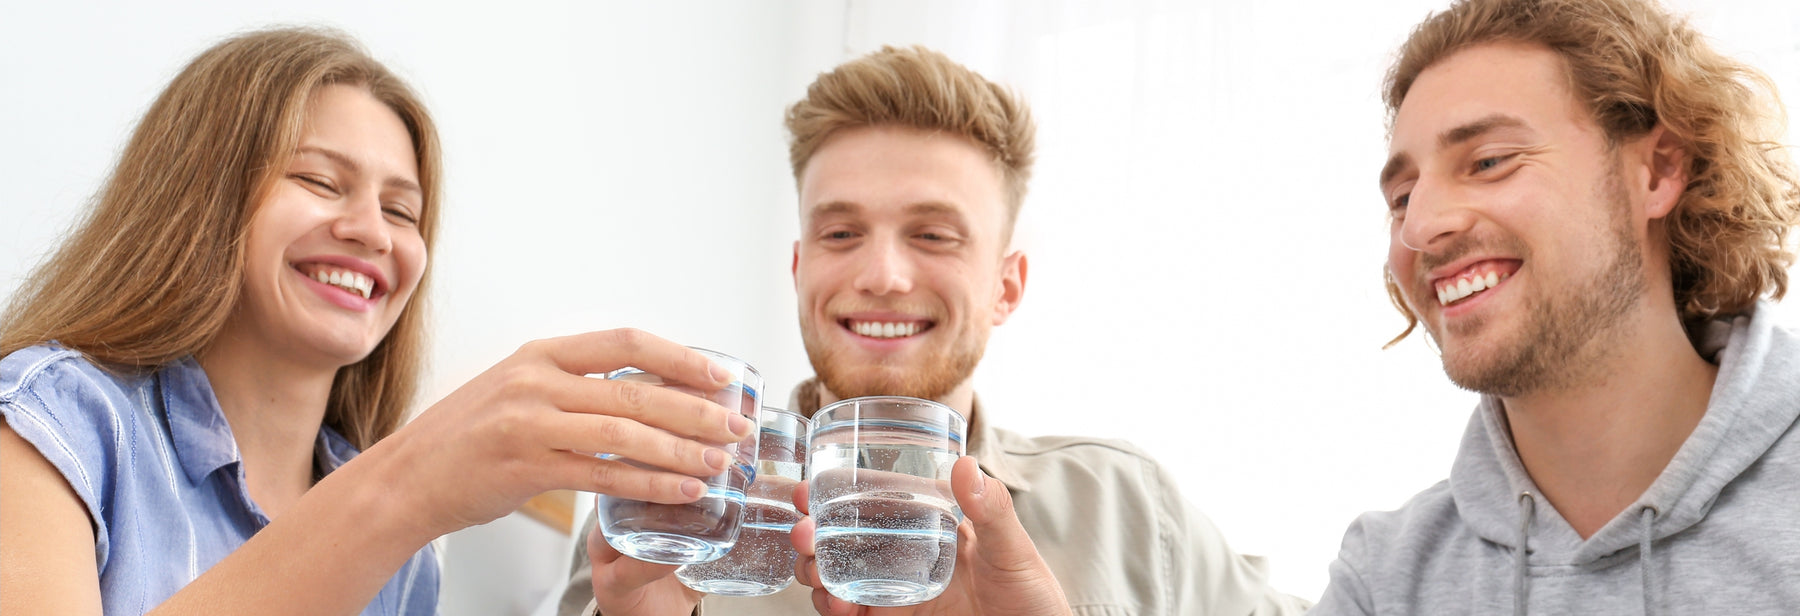 Water Variety: Exploring 7 Health-Focused Water Options